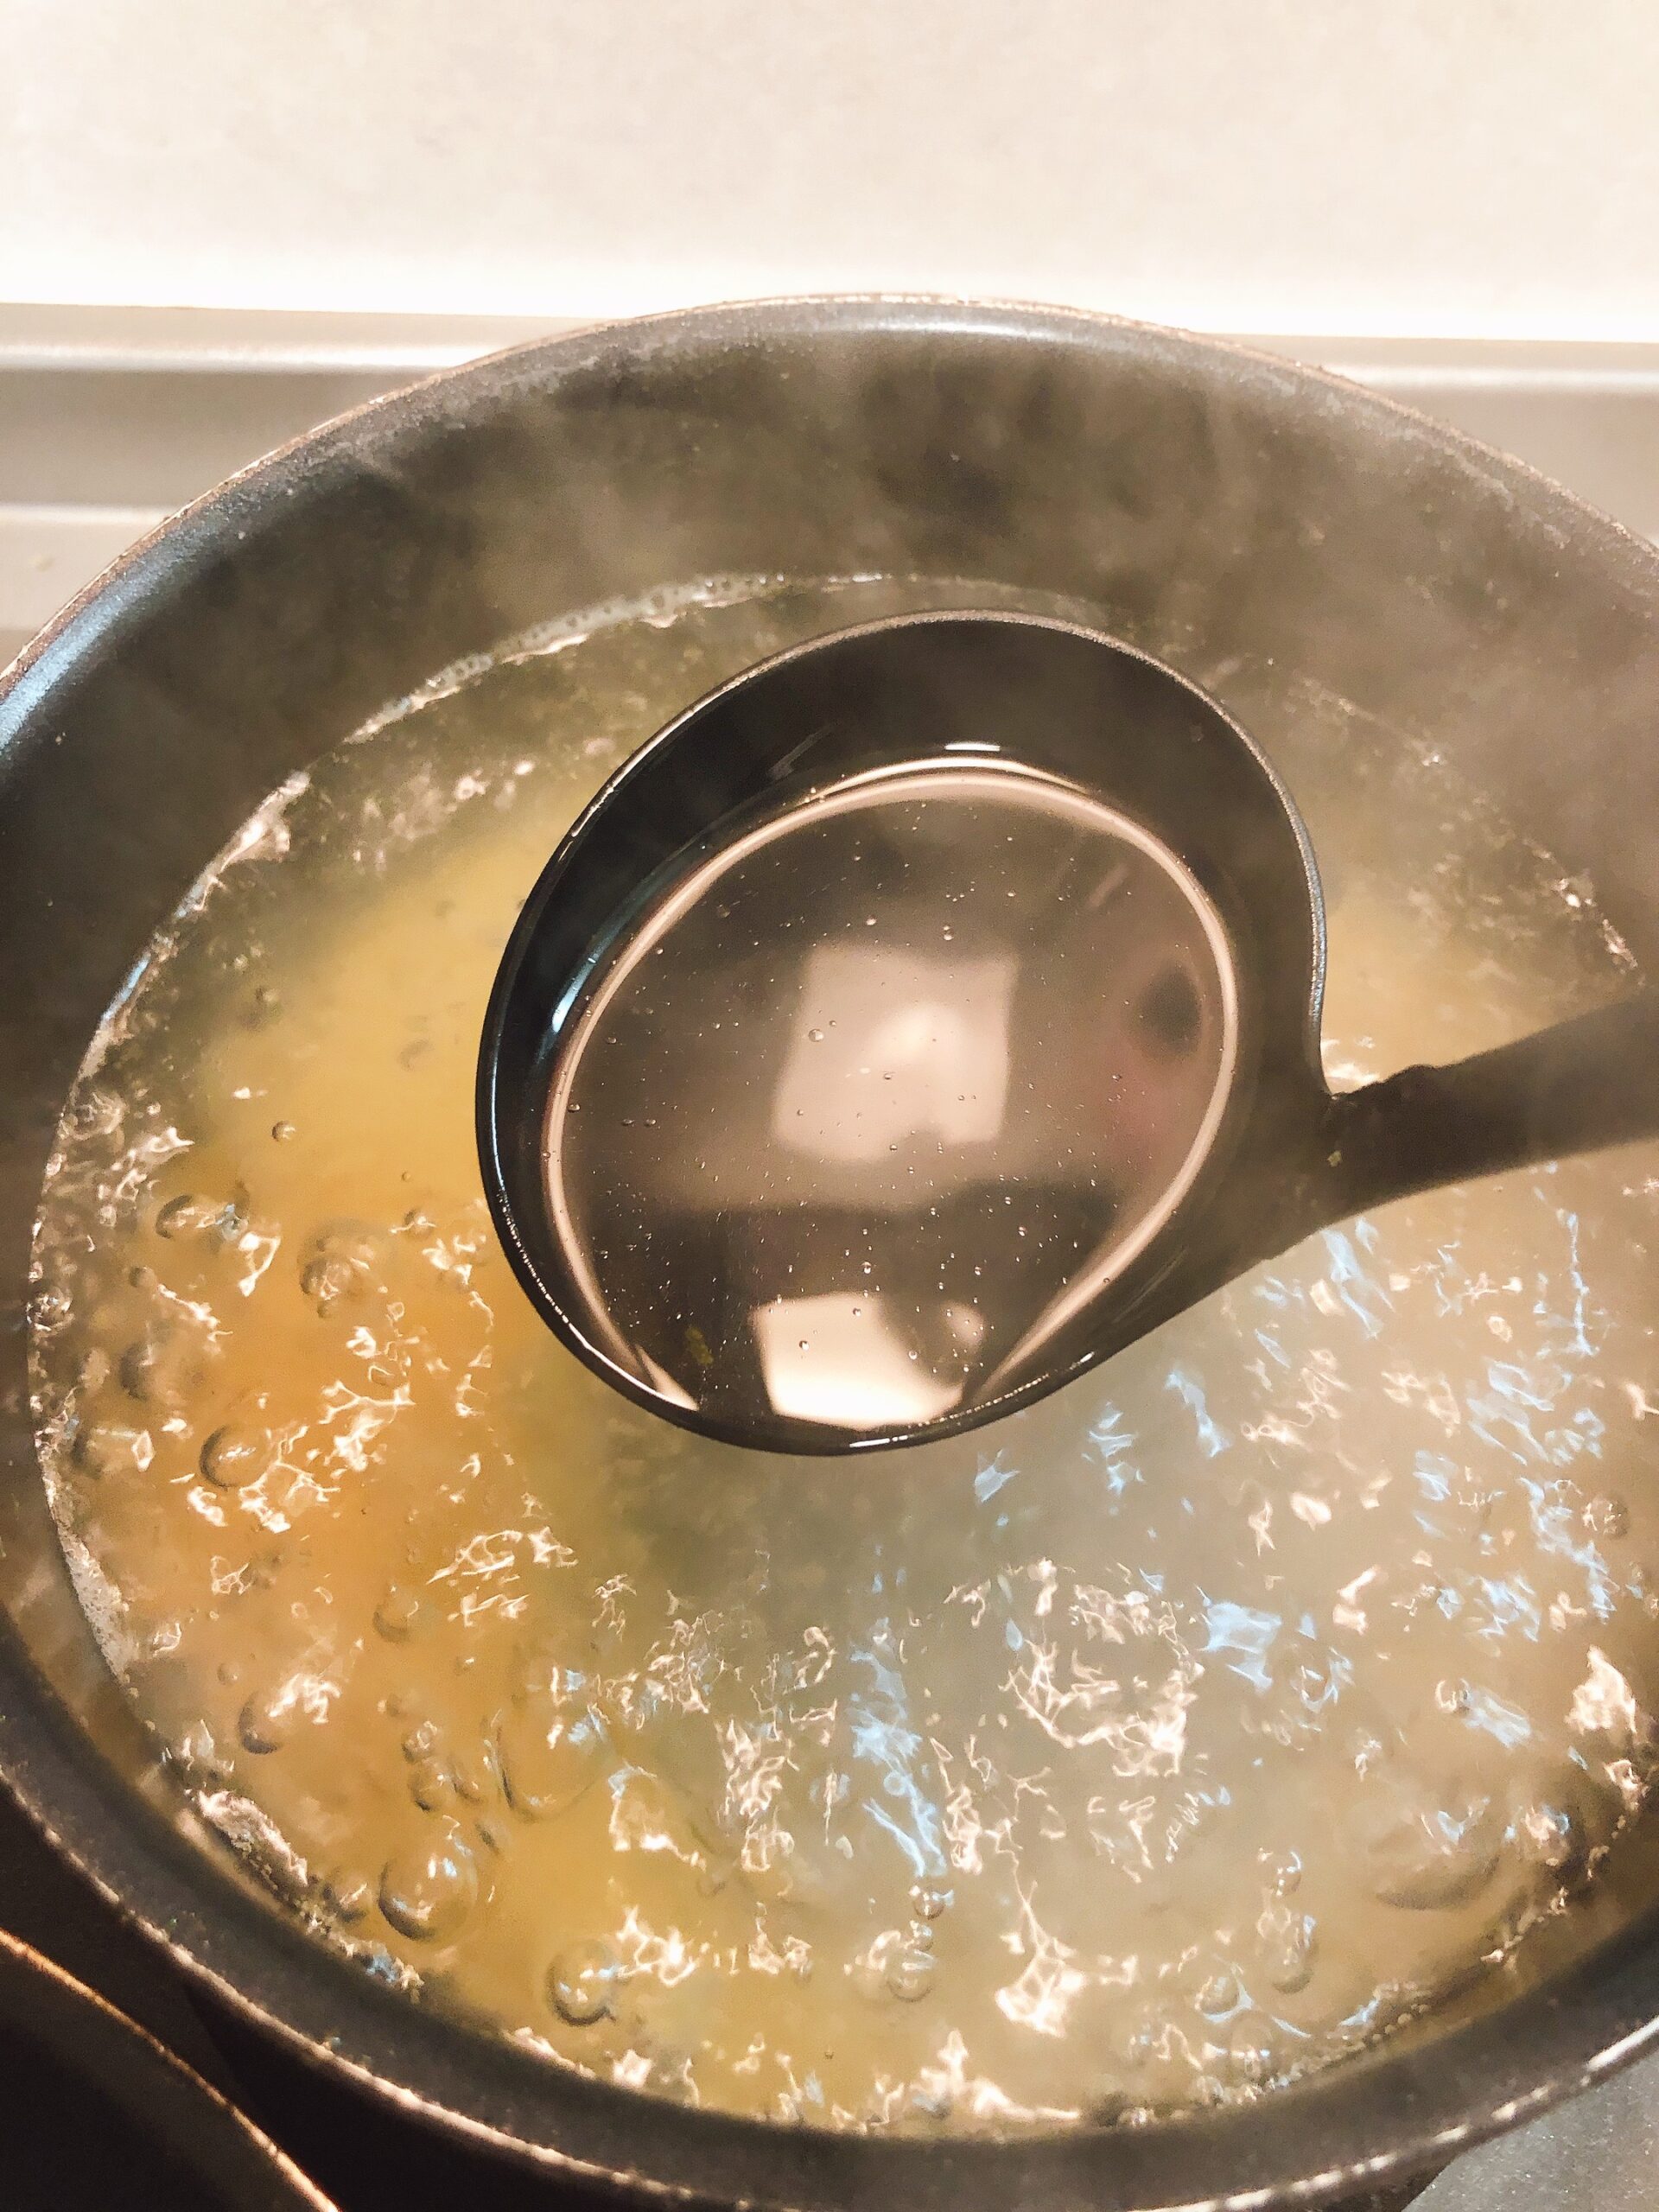 パスタの茹で汁を適量フライパンに加え用とする状態の画像です